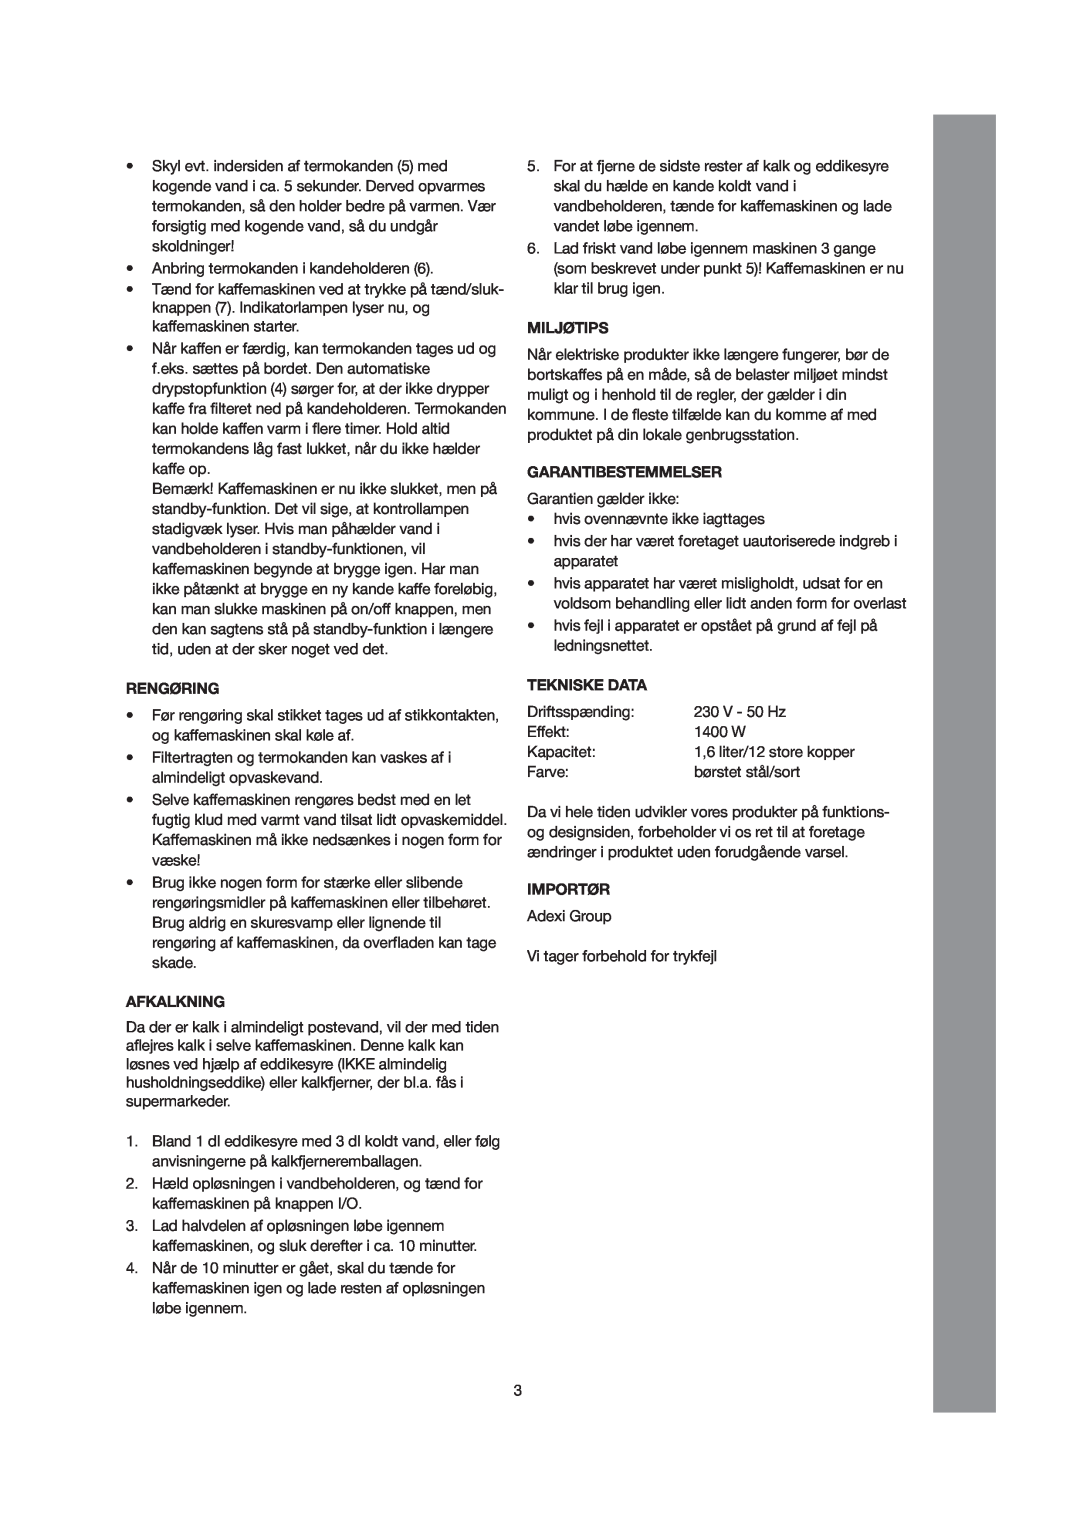 Melissa 245-040 manual Rengøring, Afkalkning, Miljøtips, Garantibestemmelser, Tekniske Data, Importør 